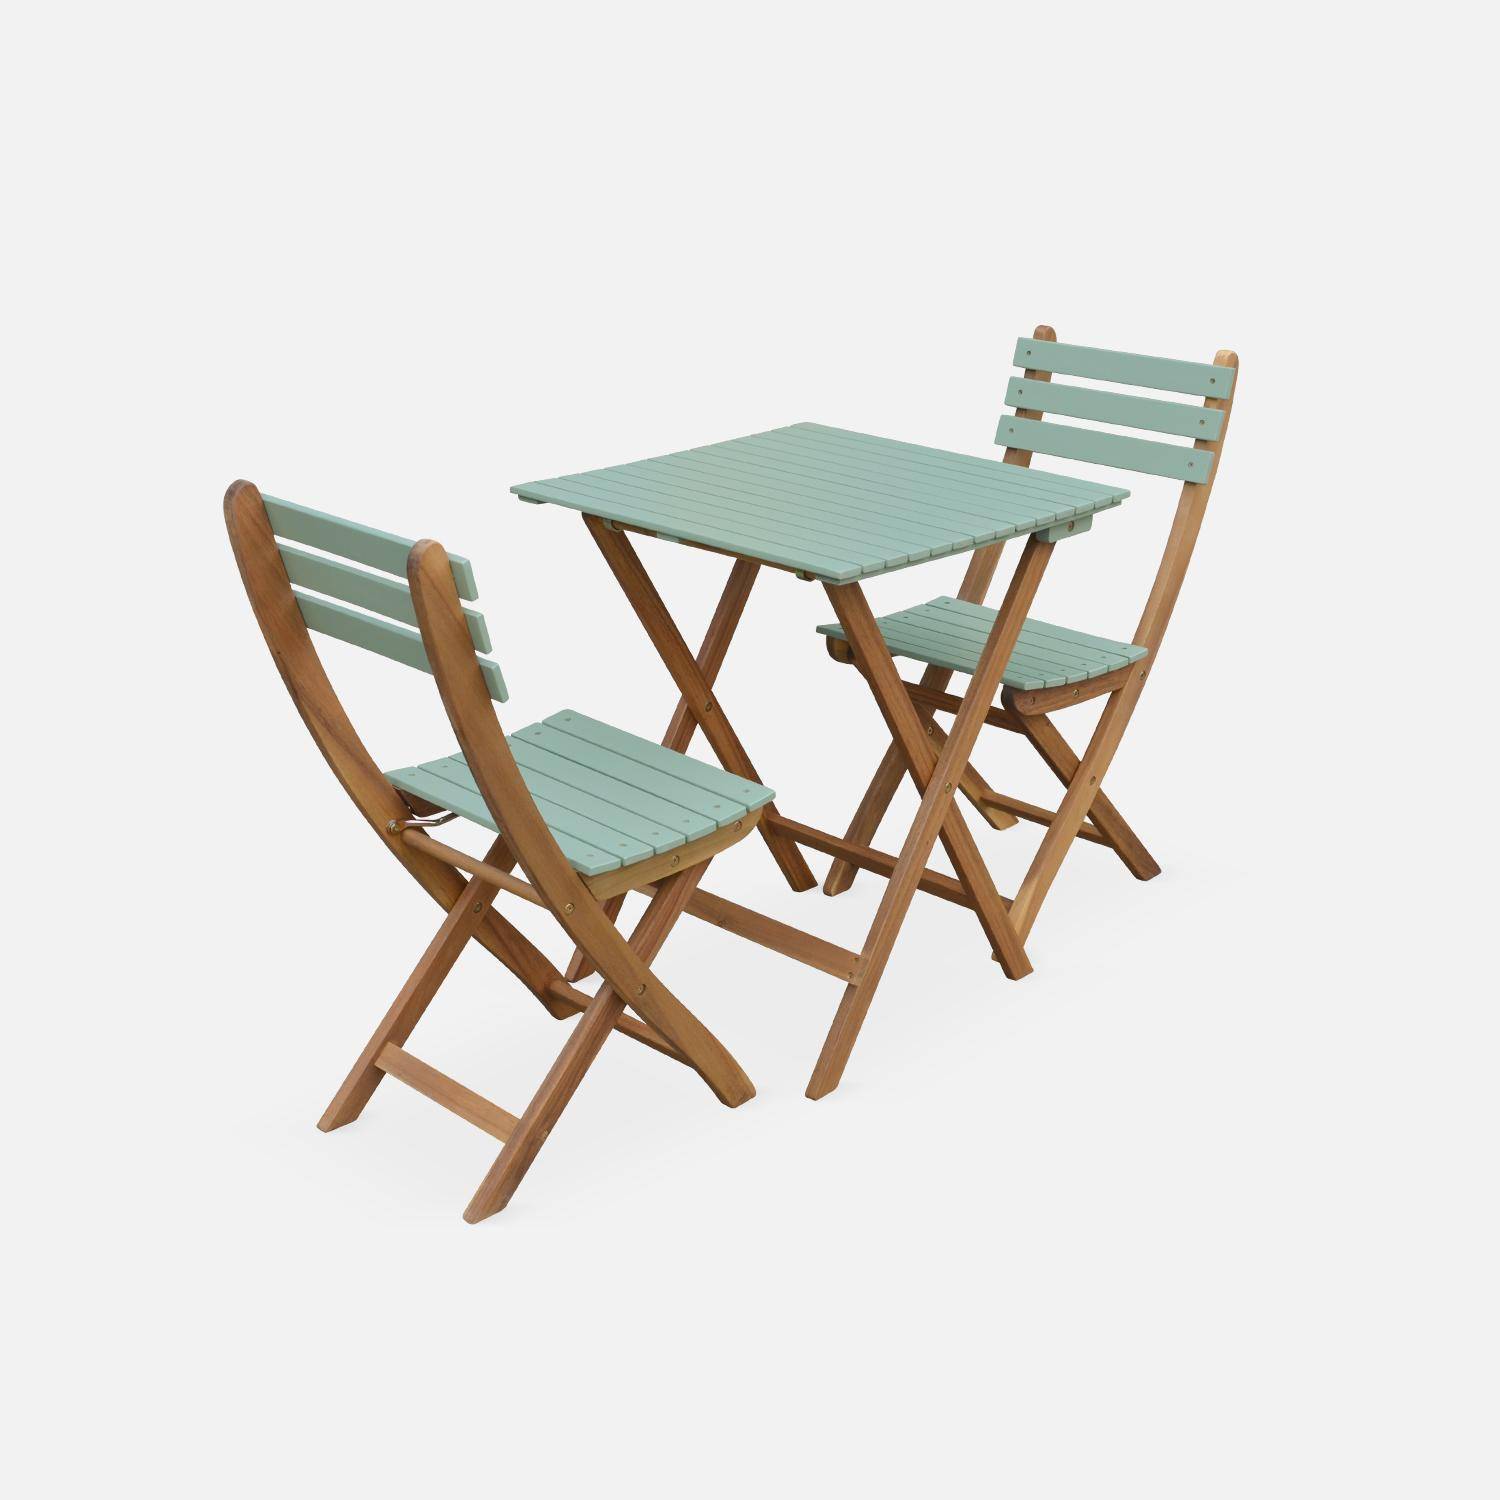 Conjunto de jardín de madera Bistro 60x60cm - Barcelona - verde grisáceo, mesa plegable bicolor con 2 sillas plegables, acacia,sweeek,Photo4